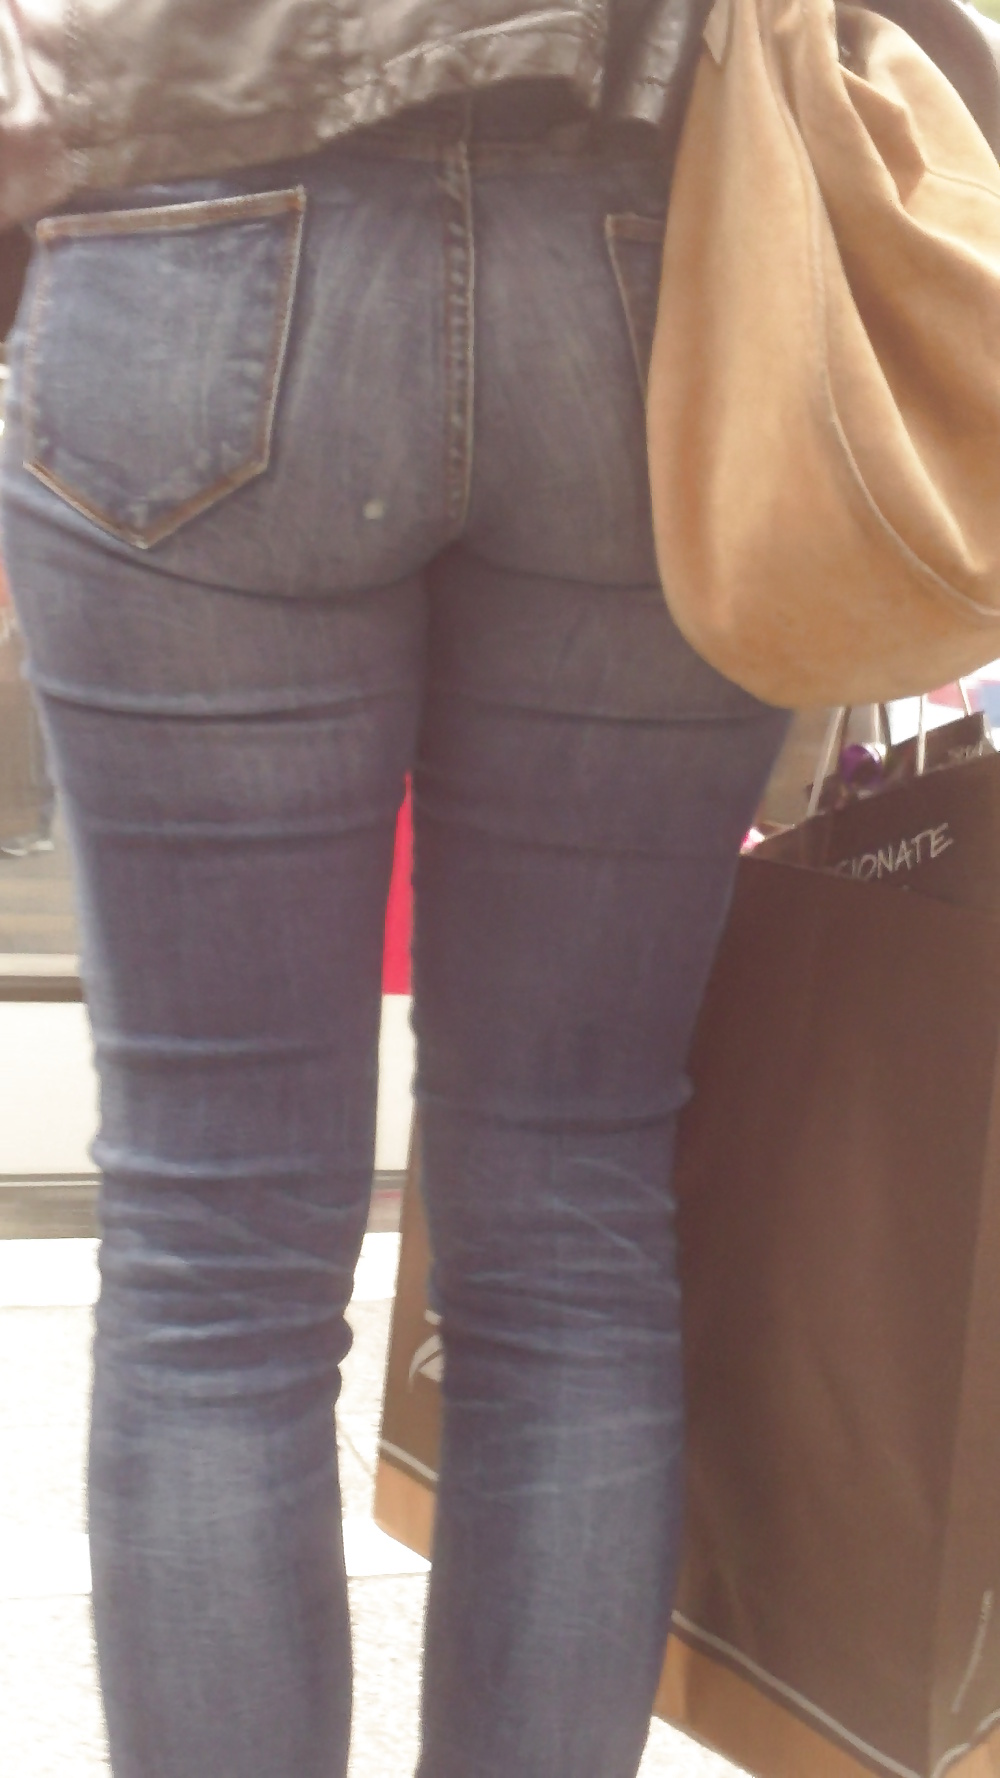 Popular teen girls ass & butt in jeans Part 6 #32010329